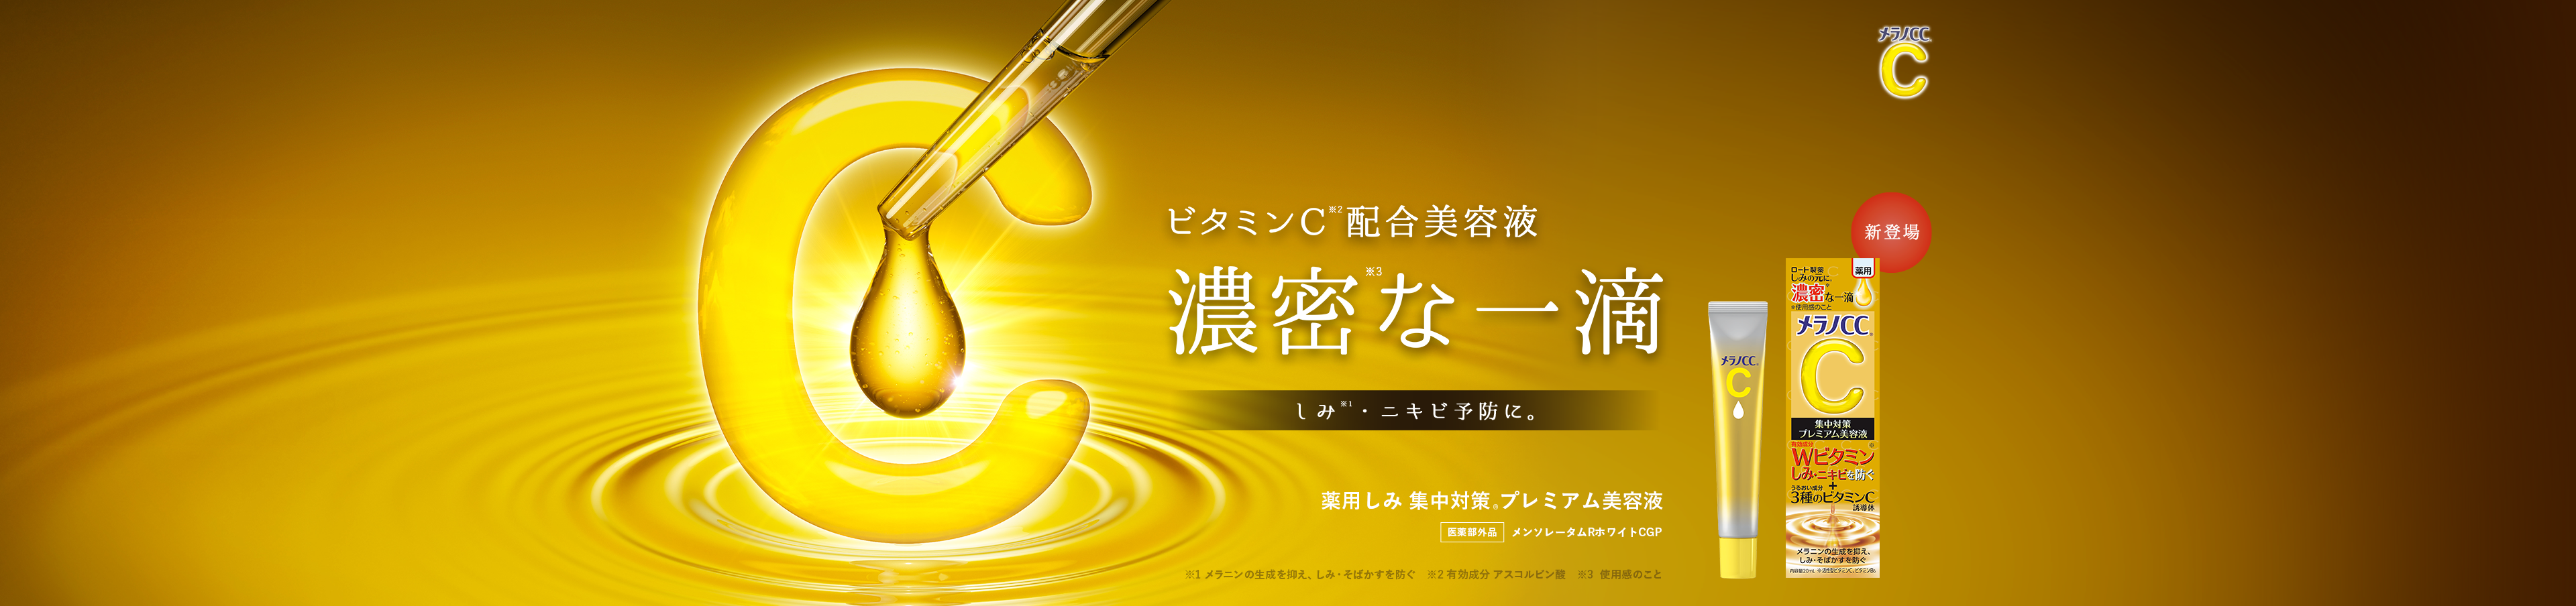 Rohto Melano CC Essence Premium Vitamin C Serum 20ml – Japanese Taste